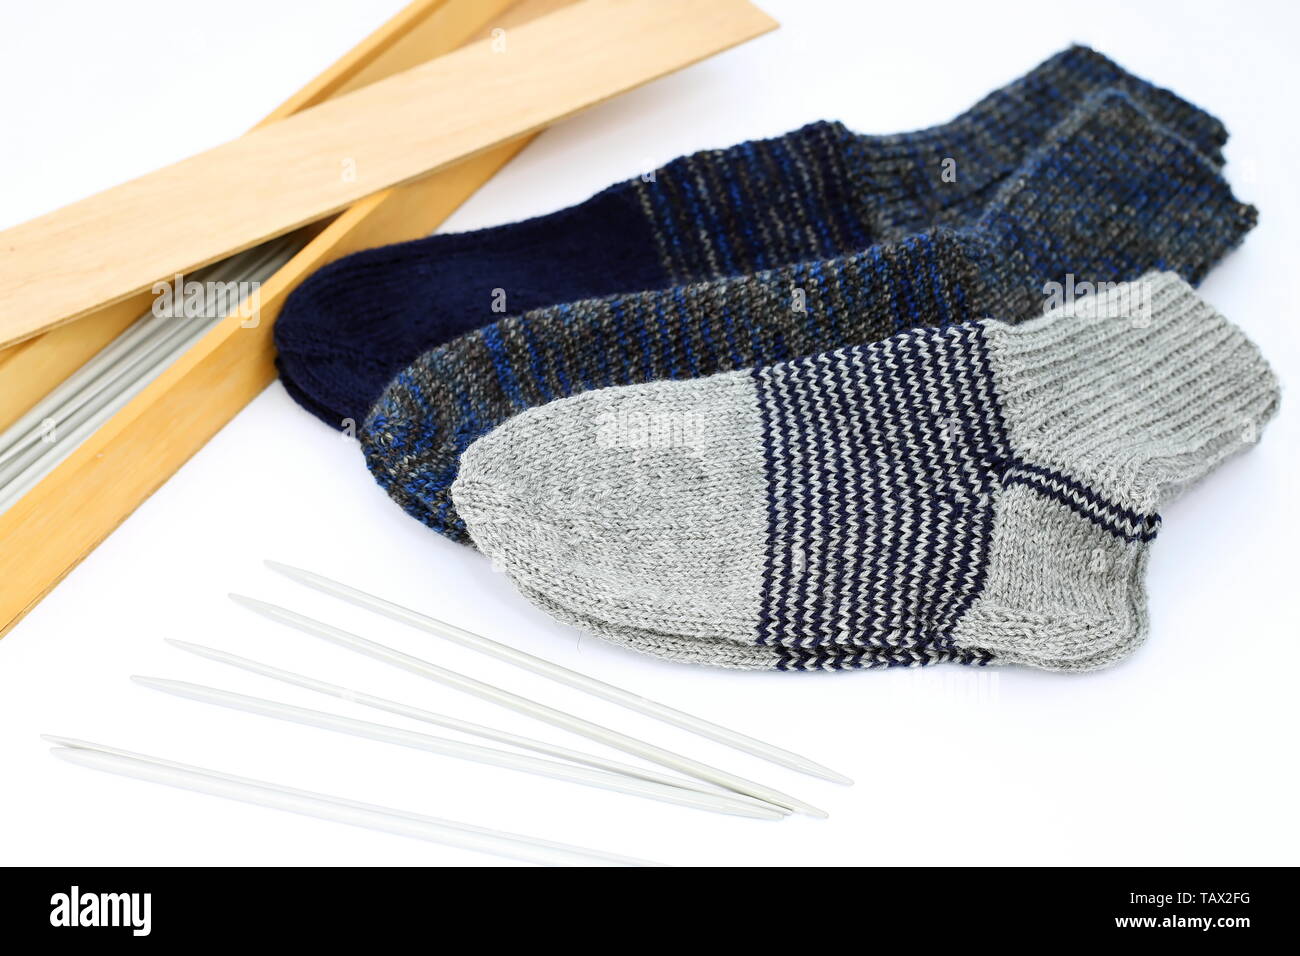 Self-made calcetines como decoración Foto de stock